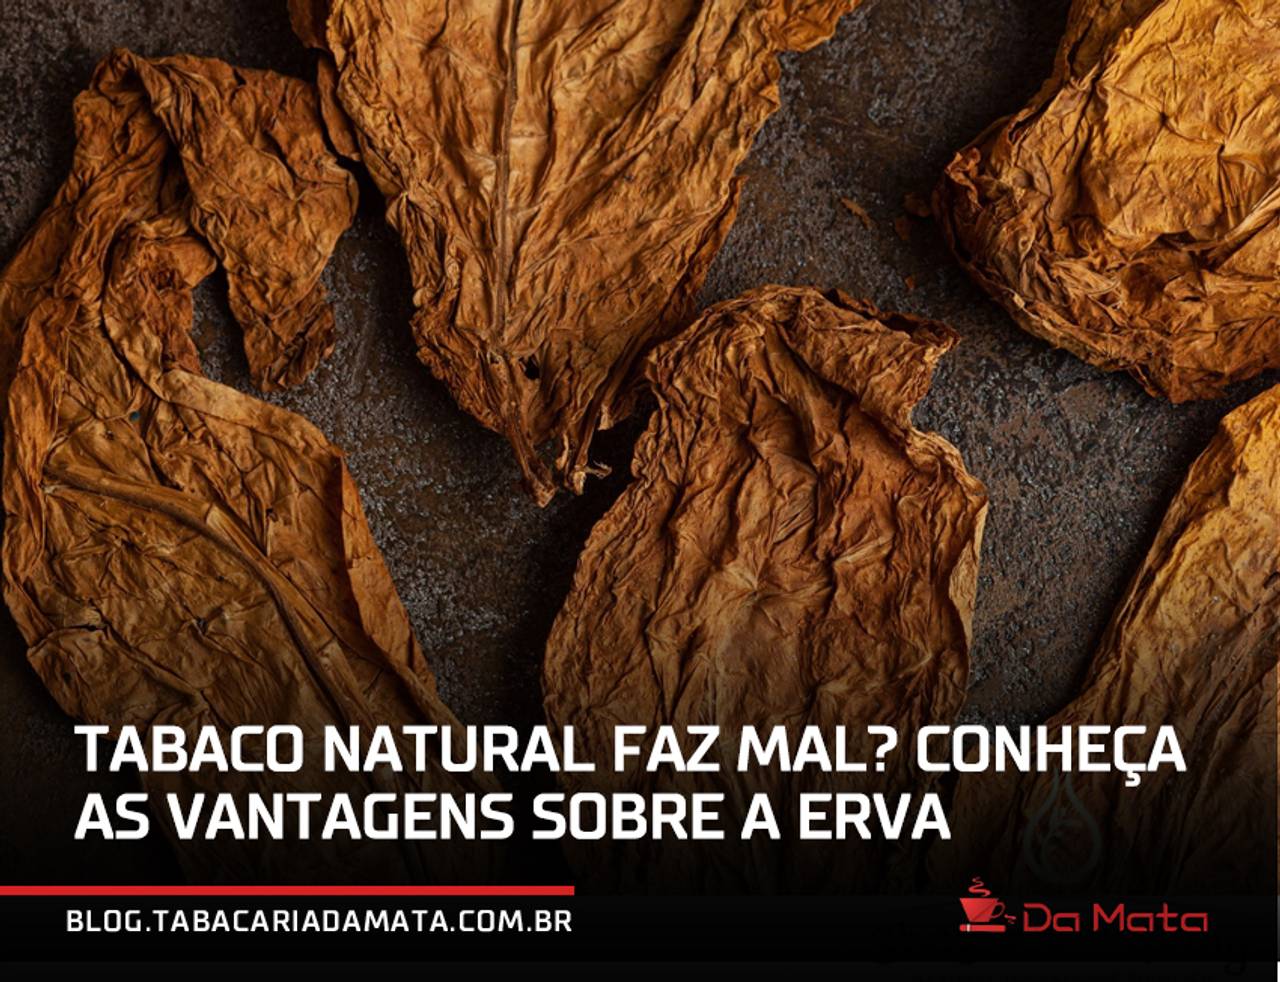 folhas de tabaco natural desidratadas com o texto sobreposto: "Tabaco Natural faz mal? Conheça as vantagens sobre a erva"